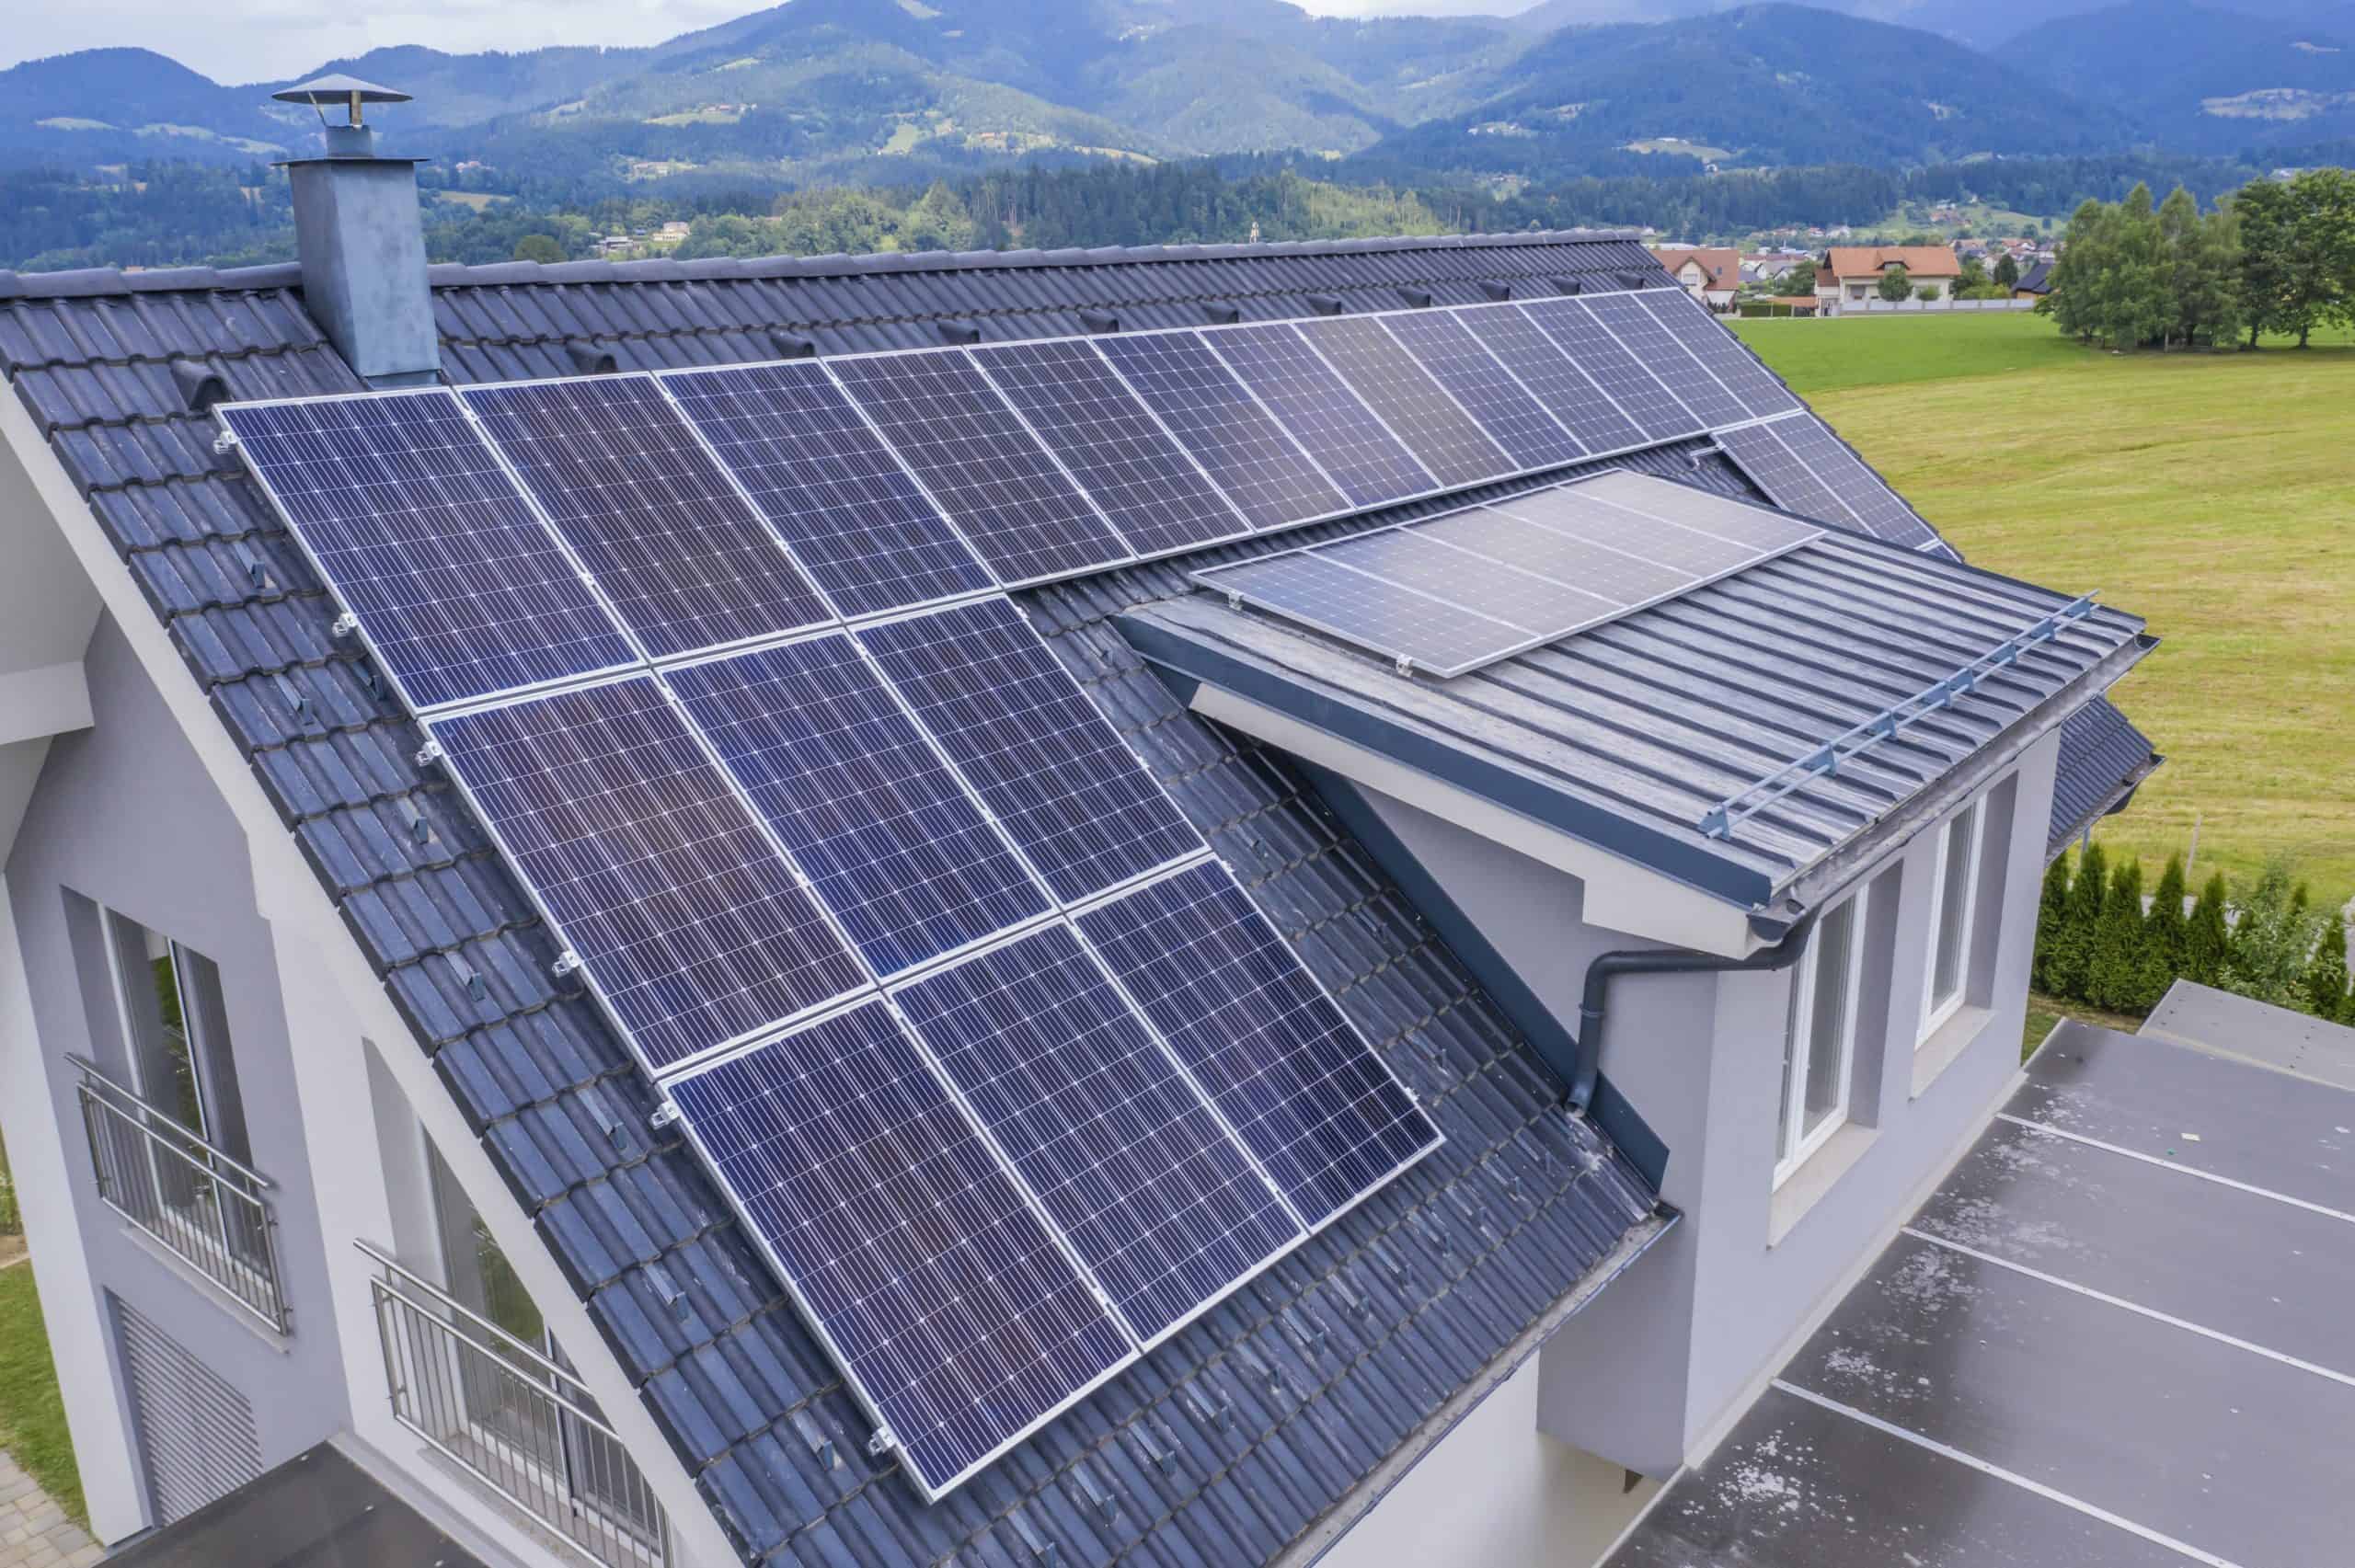 eksekverbar Illusion lounge Solcelletag | hvad koster solceller på taget? - Boligmesteren